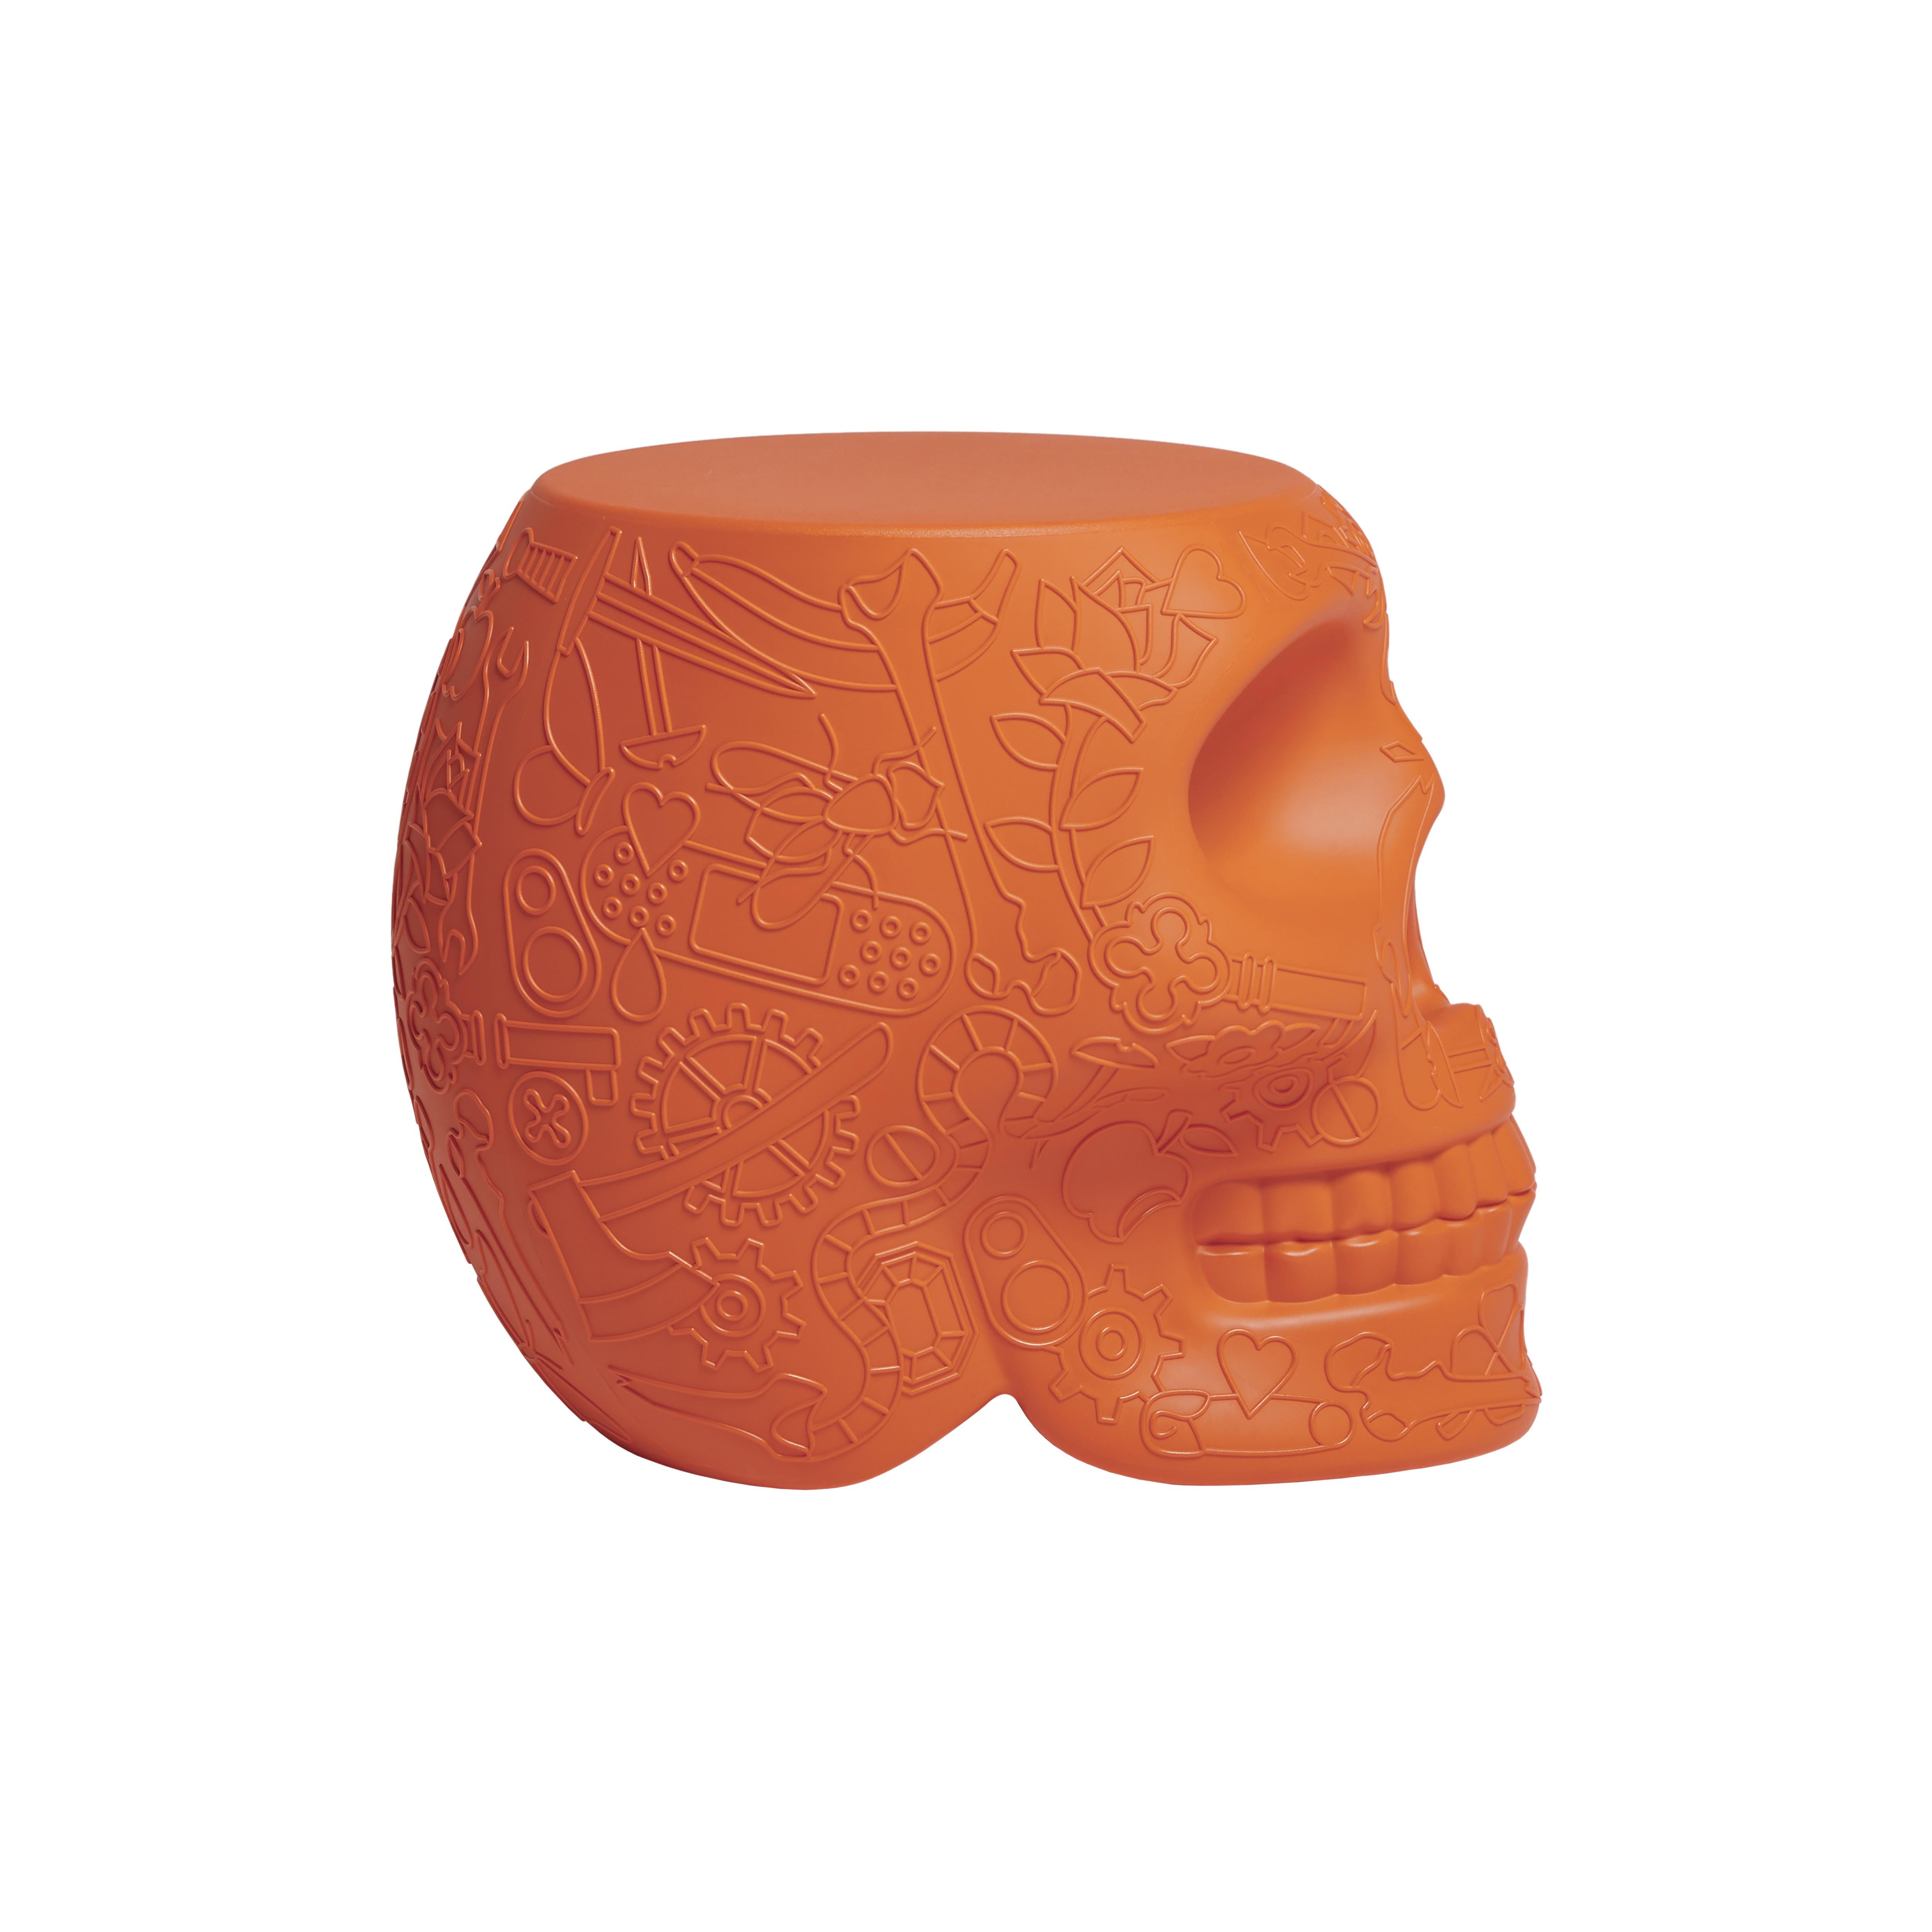 En vente : Orange (Terracotta) Table d'appoint mexicaine moderne Calavera Skull en terre cuite noire, verte ou blanche 3